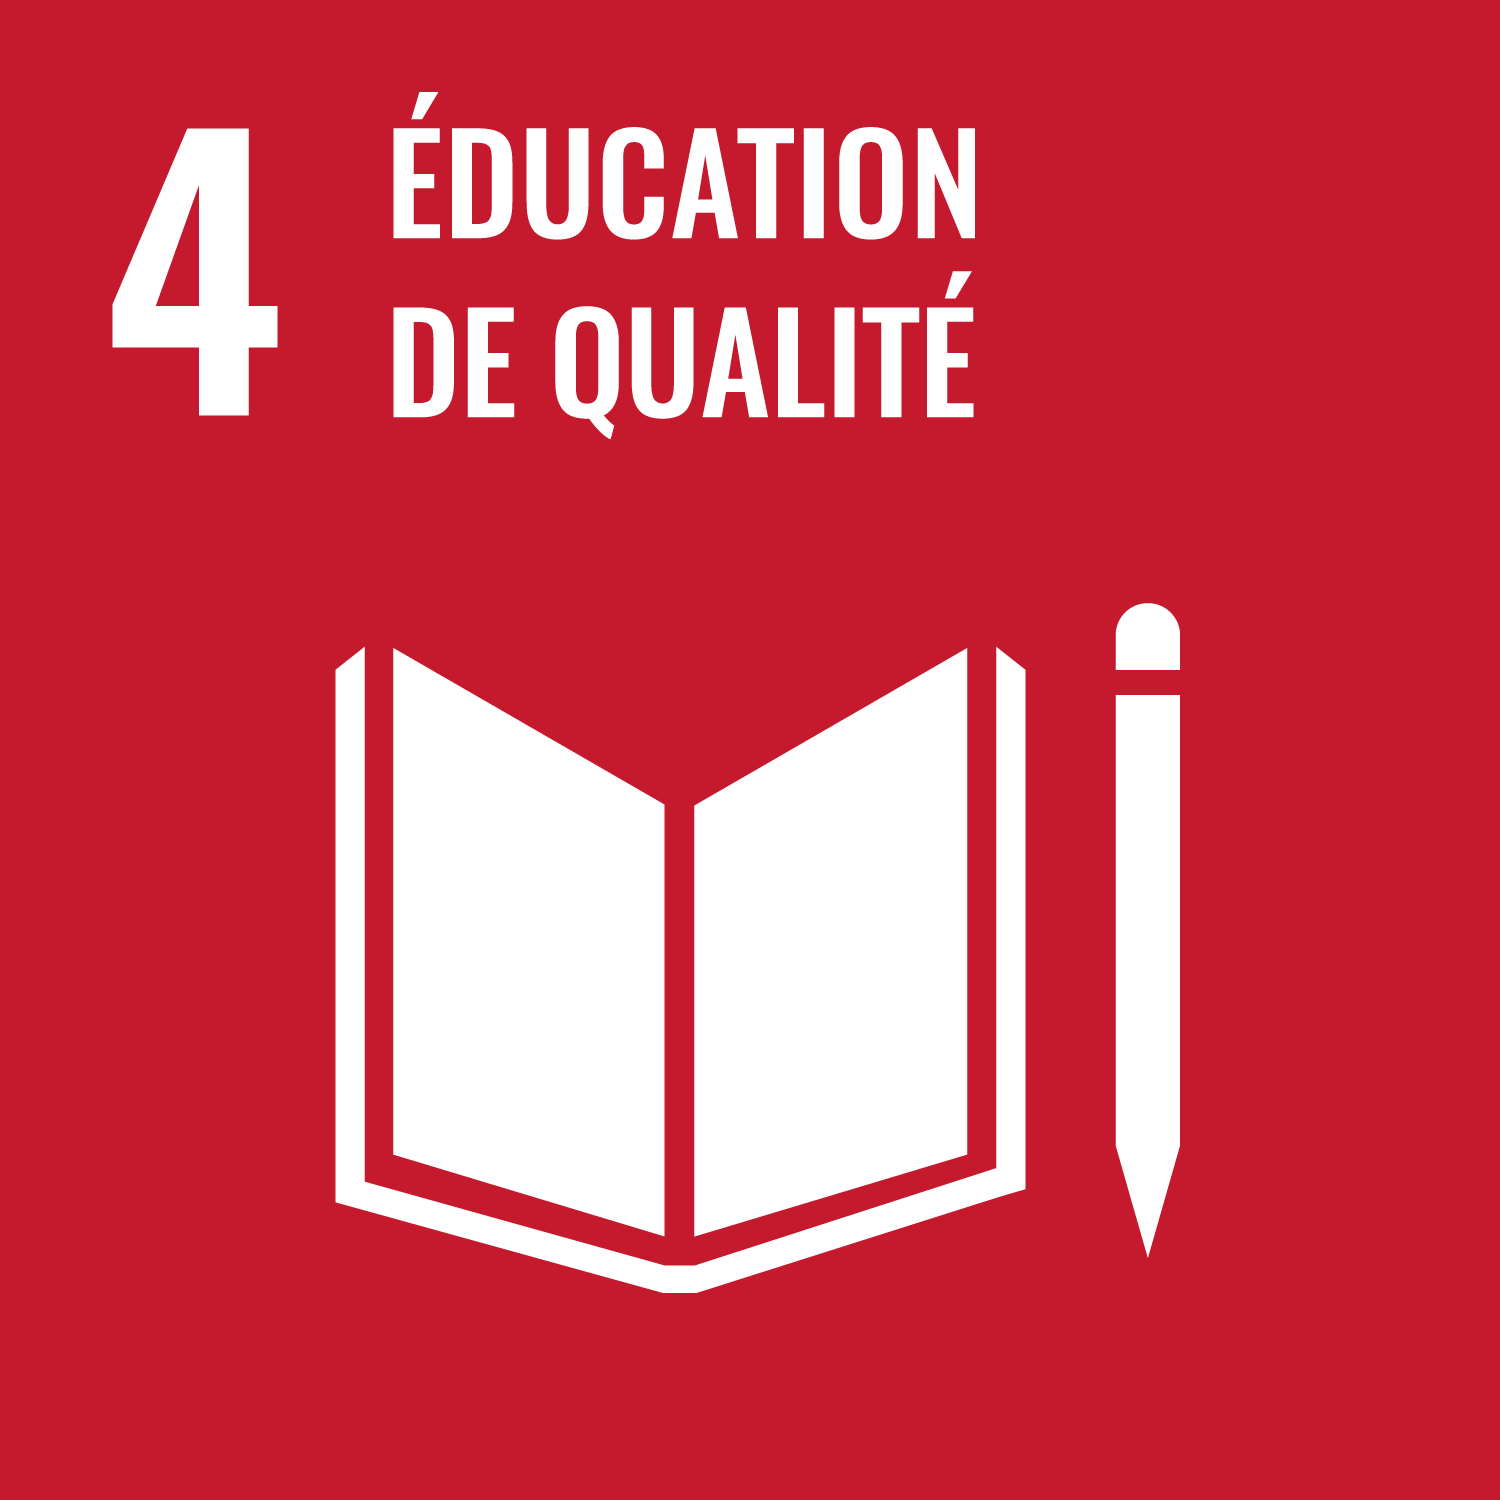 Objectif de Développement Durable de l'O.N.U. 4 : éducation de qualité